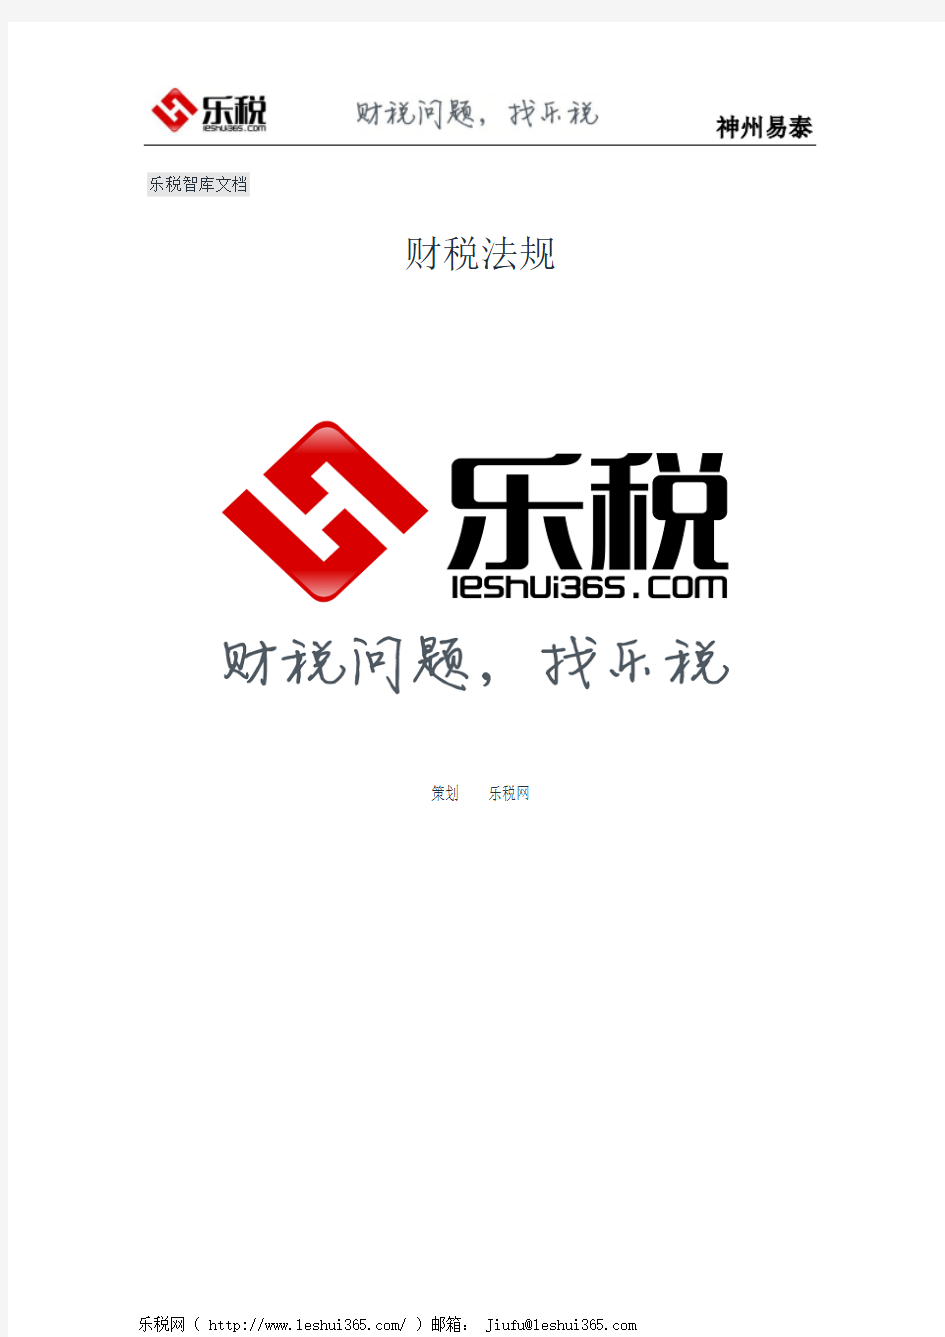 四川省国家税务局关于软件企业审批问题的通知